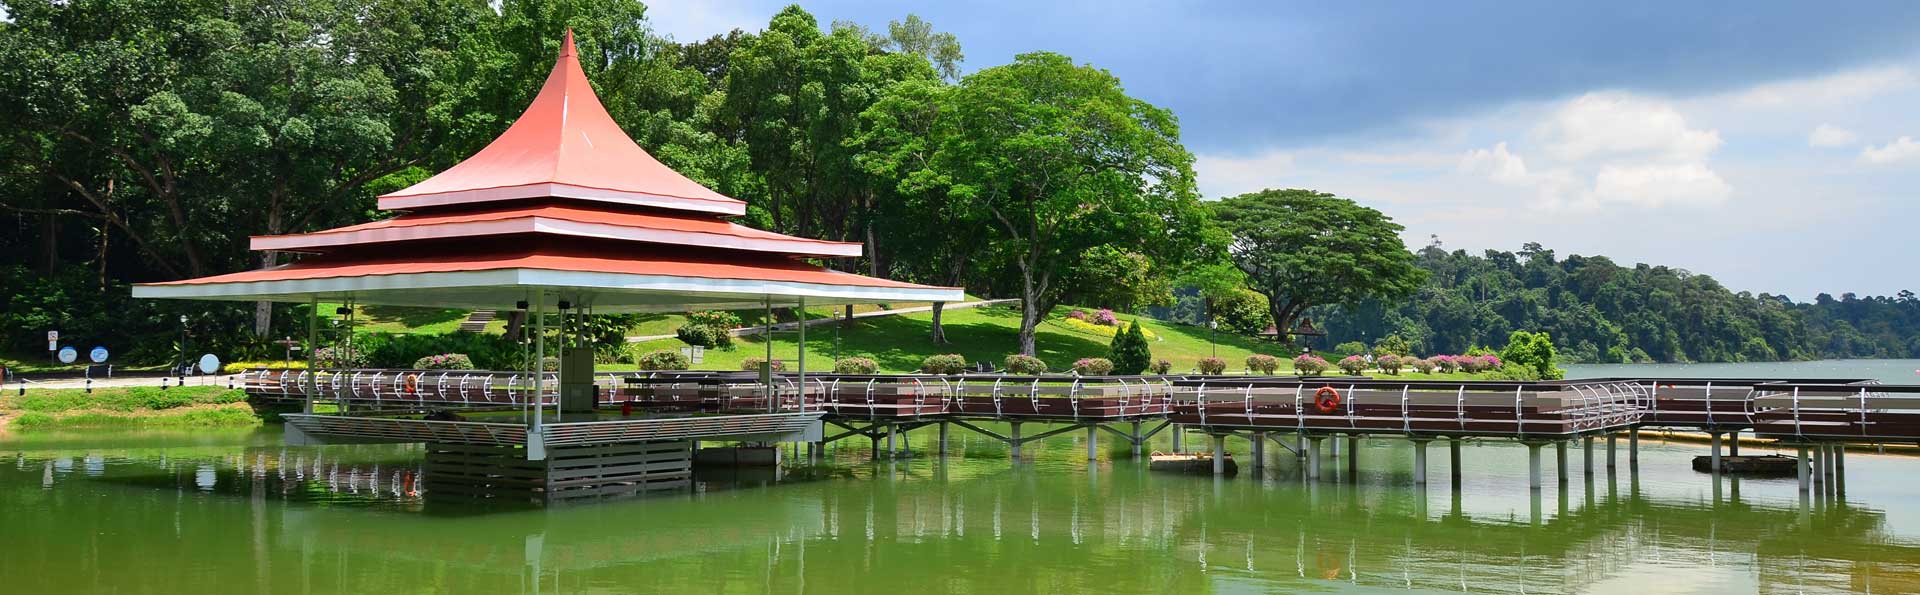 シンガポールの貯水池 自然とアウトドア シンガポール観光ガイド